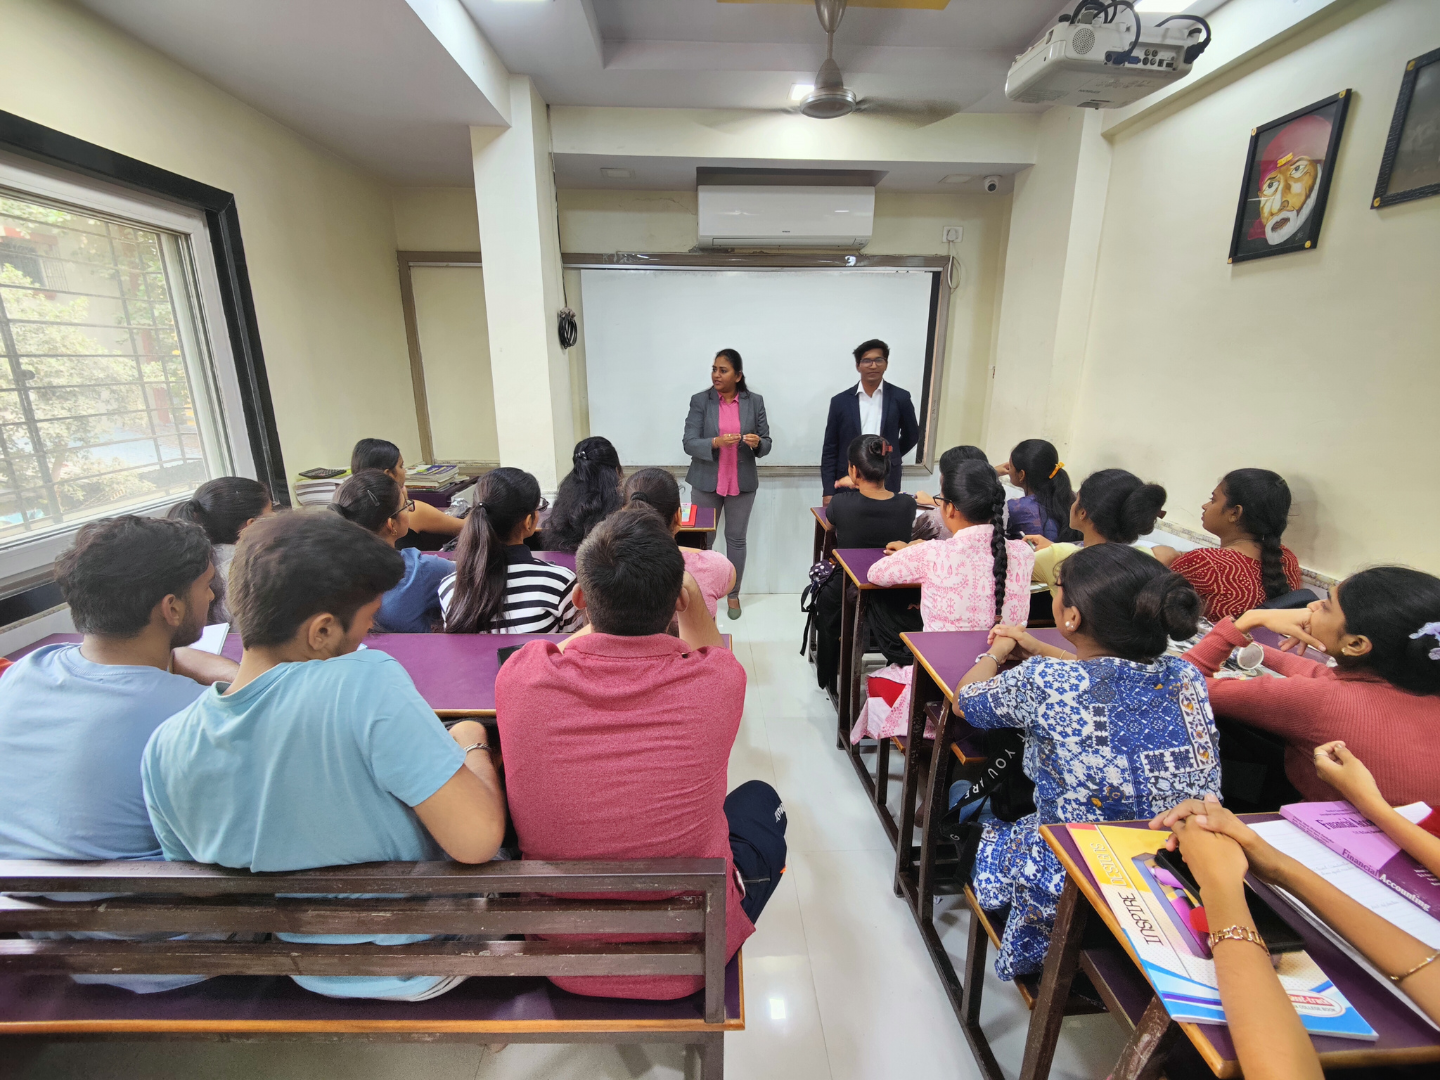 BFSI Seminar at Avishkar Coaching classes